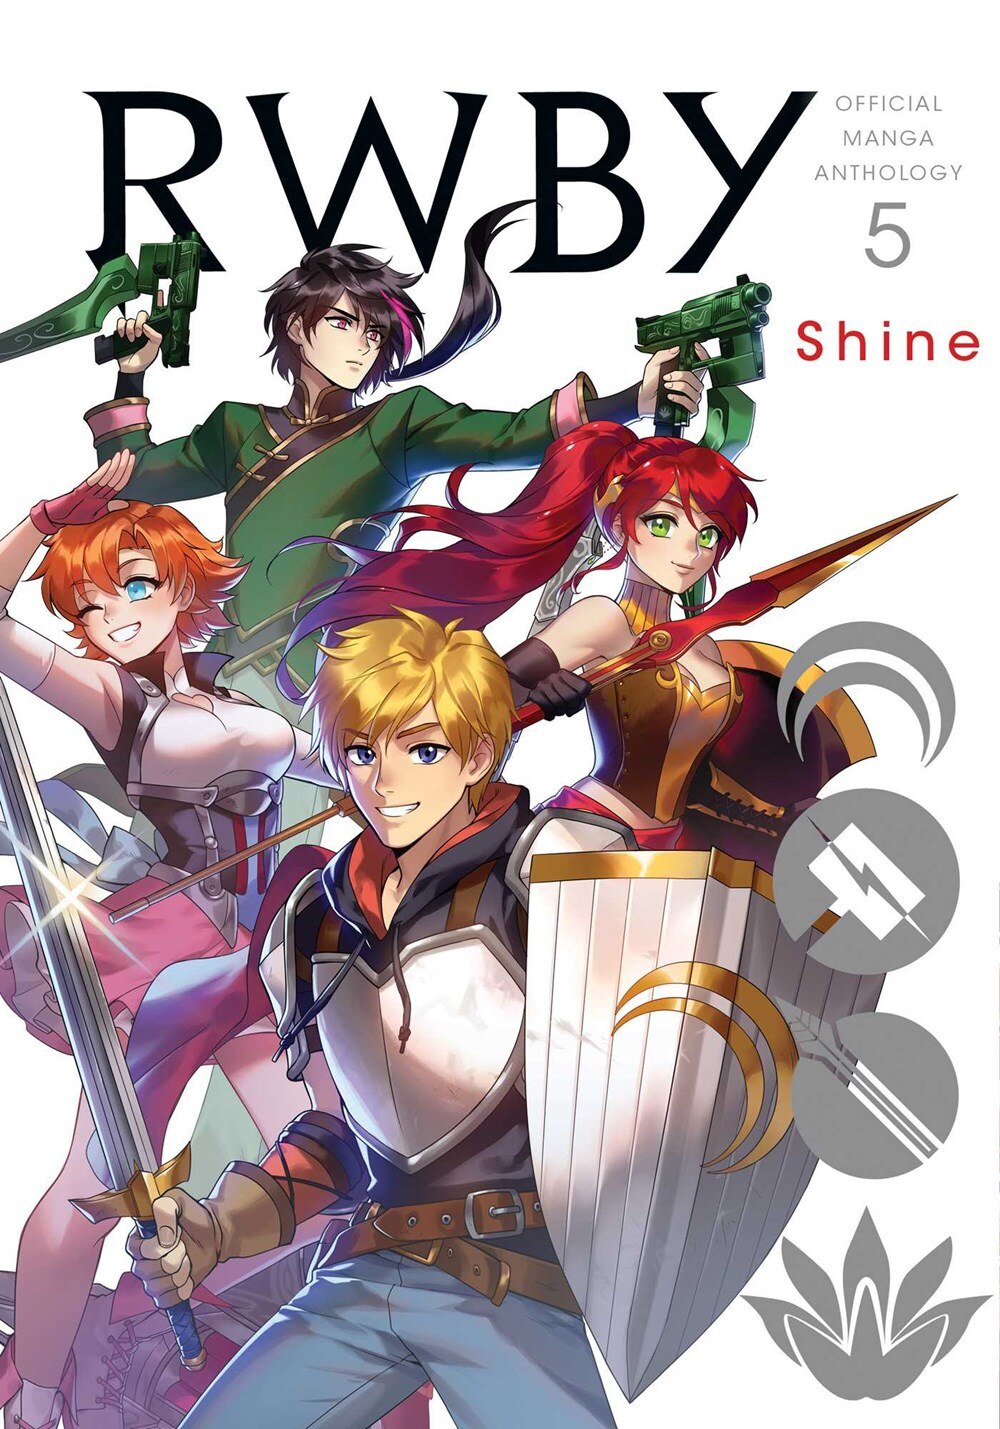 Rwby: Official Manga Anthology  Vol. 5  5: Shine